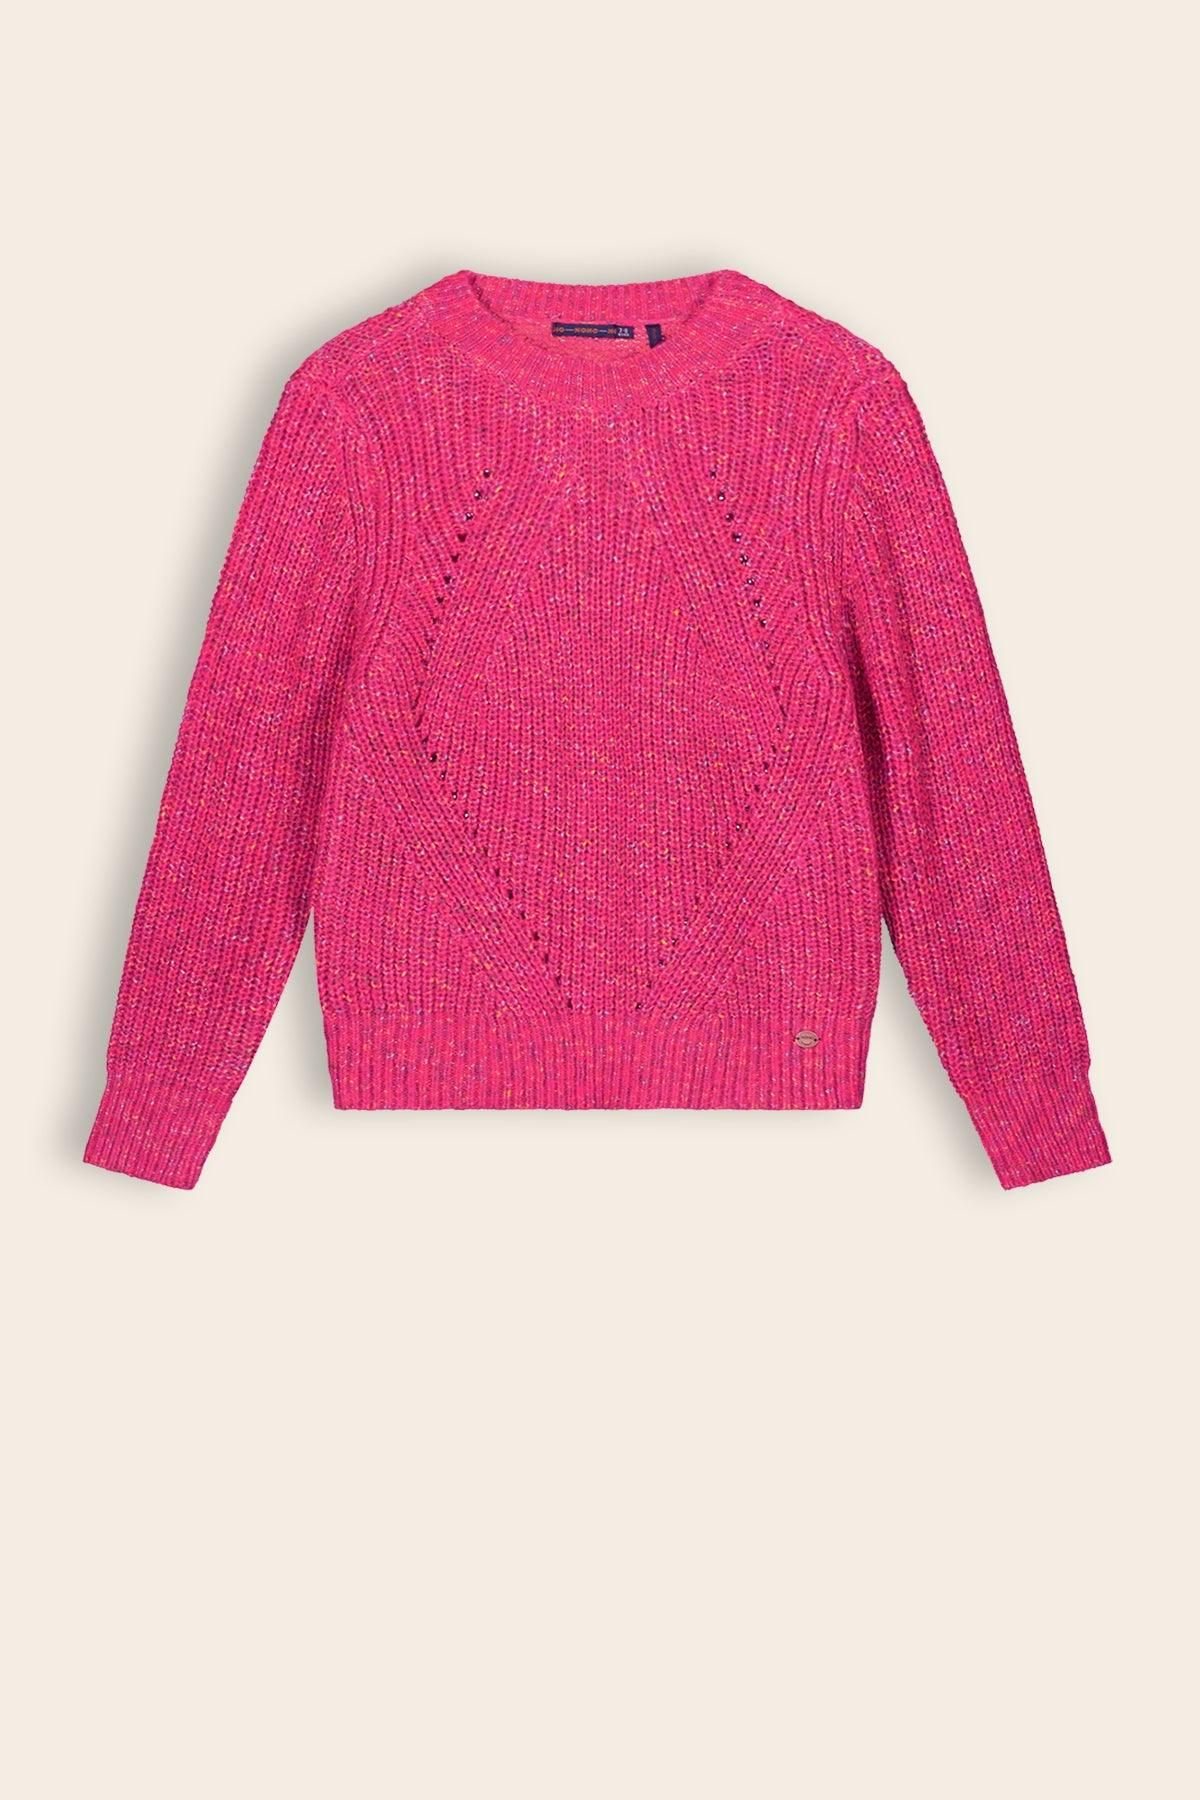 Trui / Sweater Kiara Gebreide Melange Trui